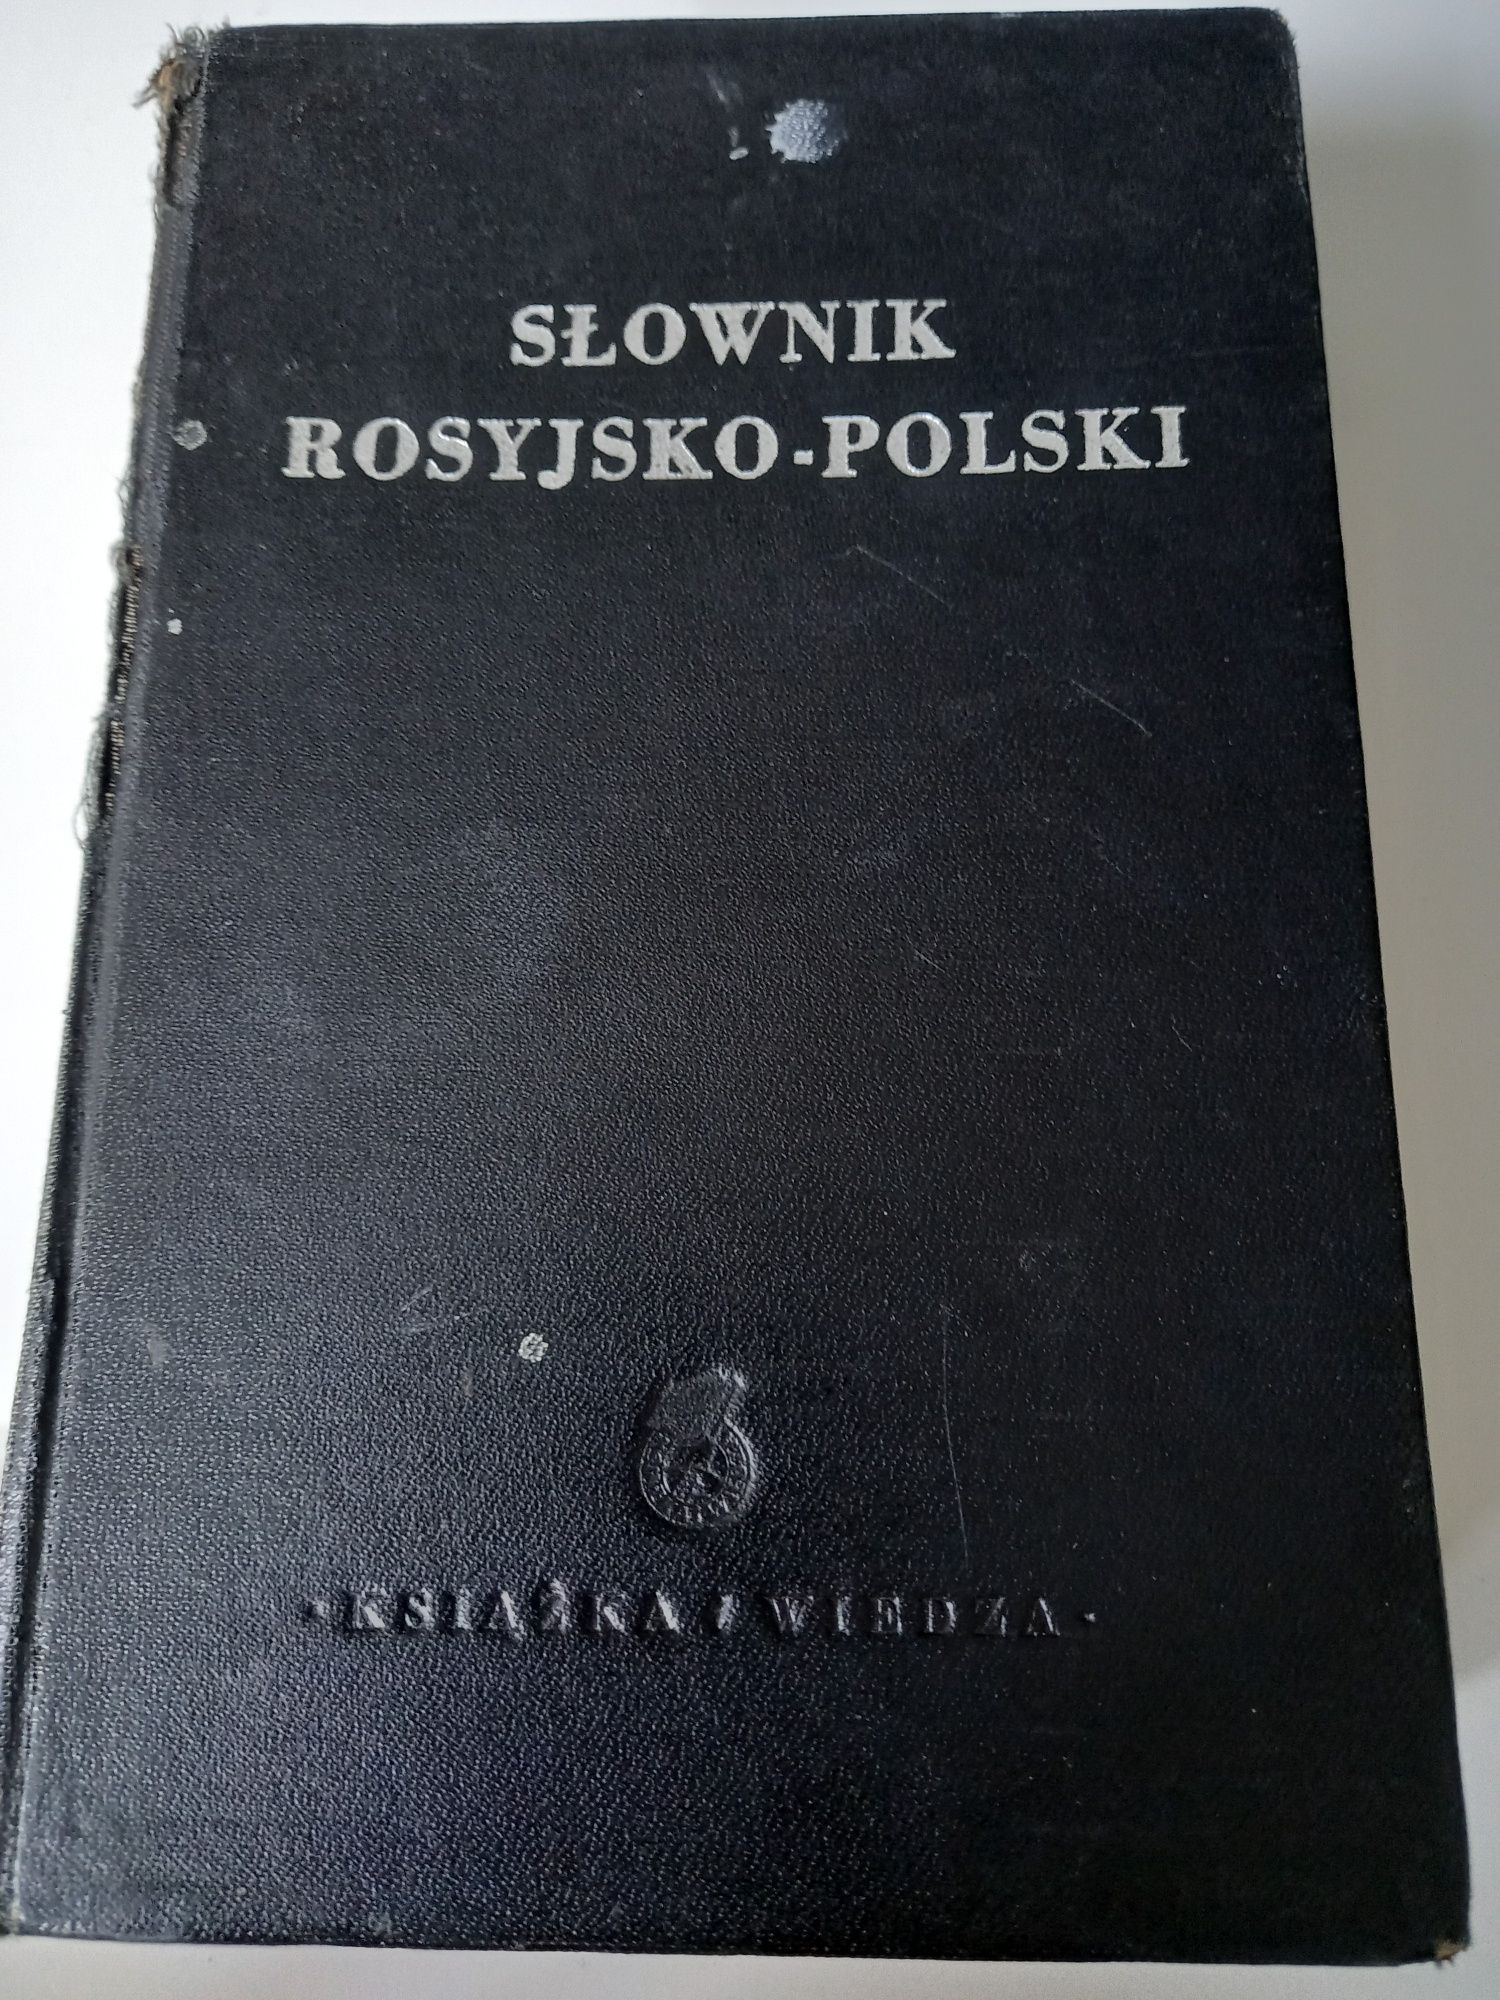 Słownik Rosyjsko-Polski Książka i Wiedza 1950